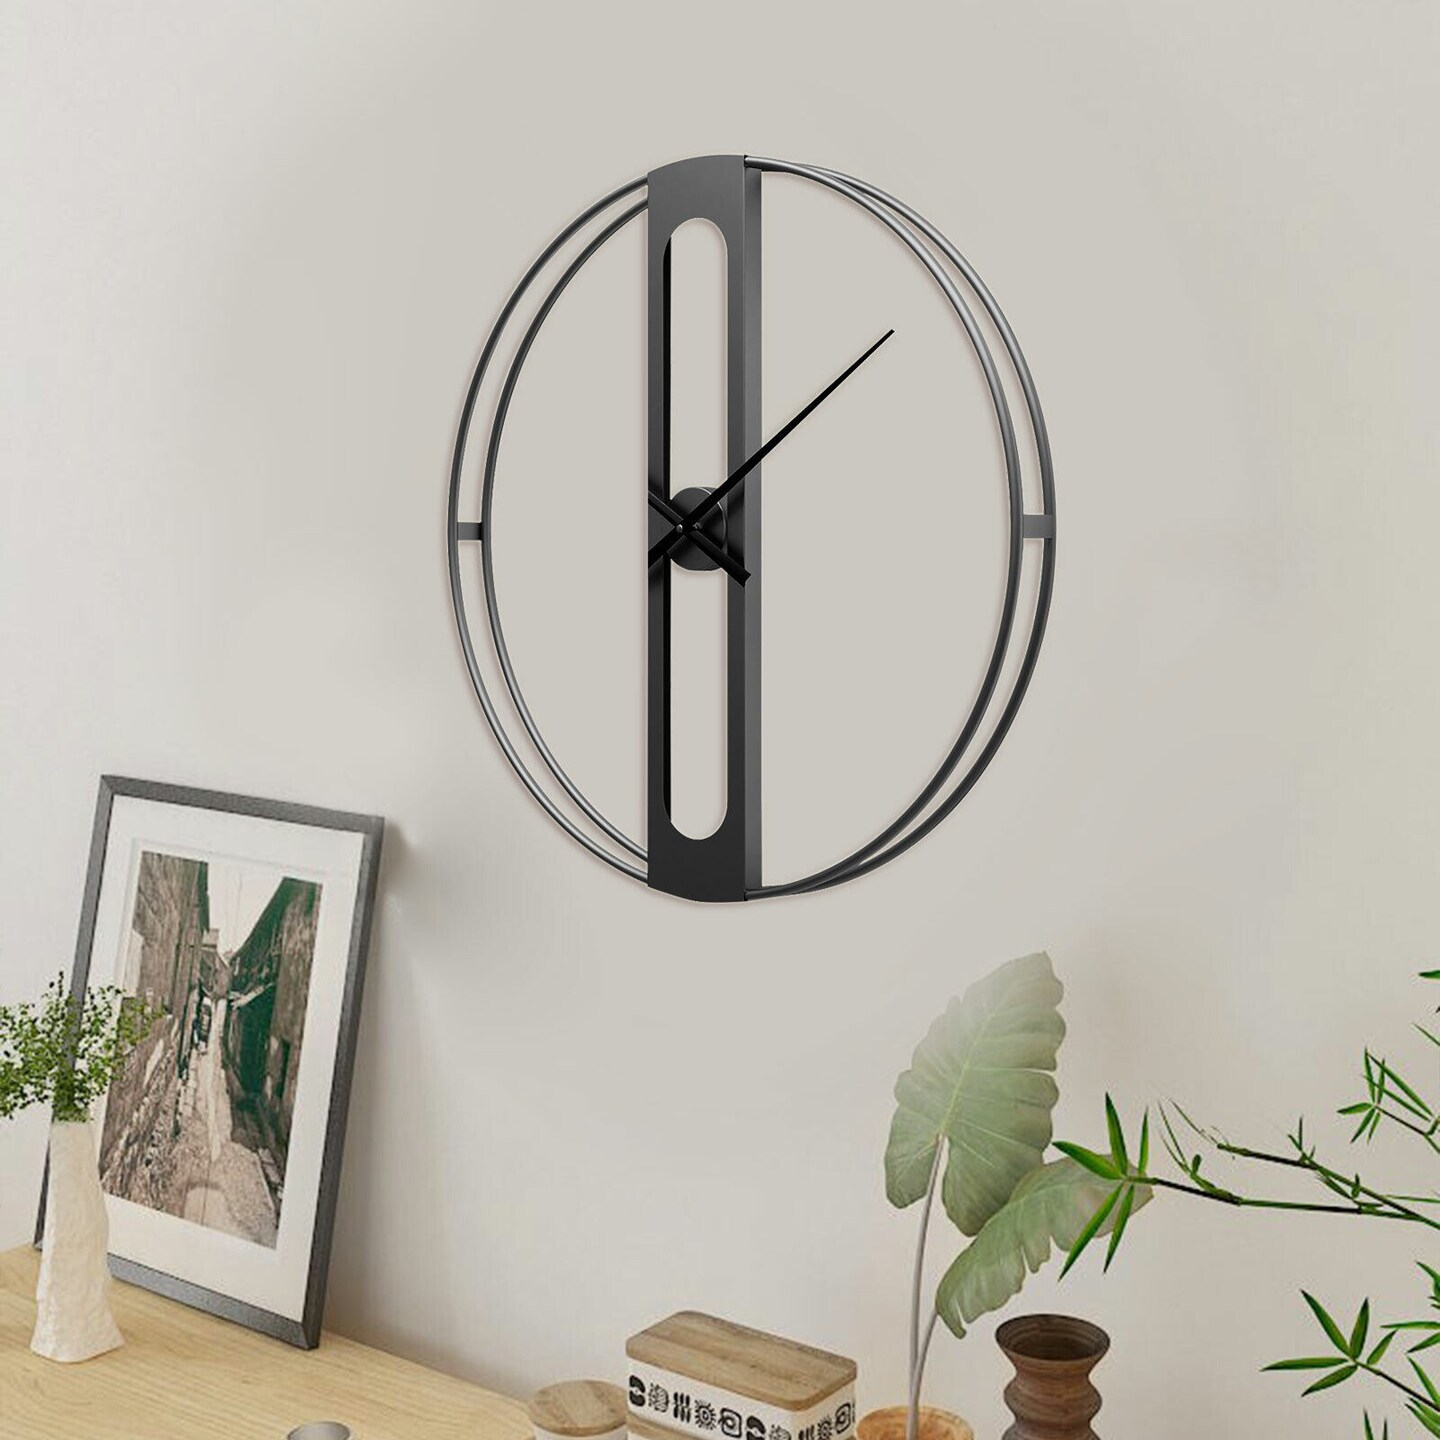 Kitcheniva Minimalist Large Metal Wall Clock